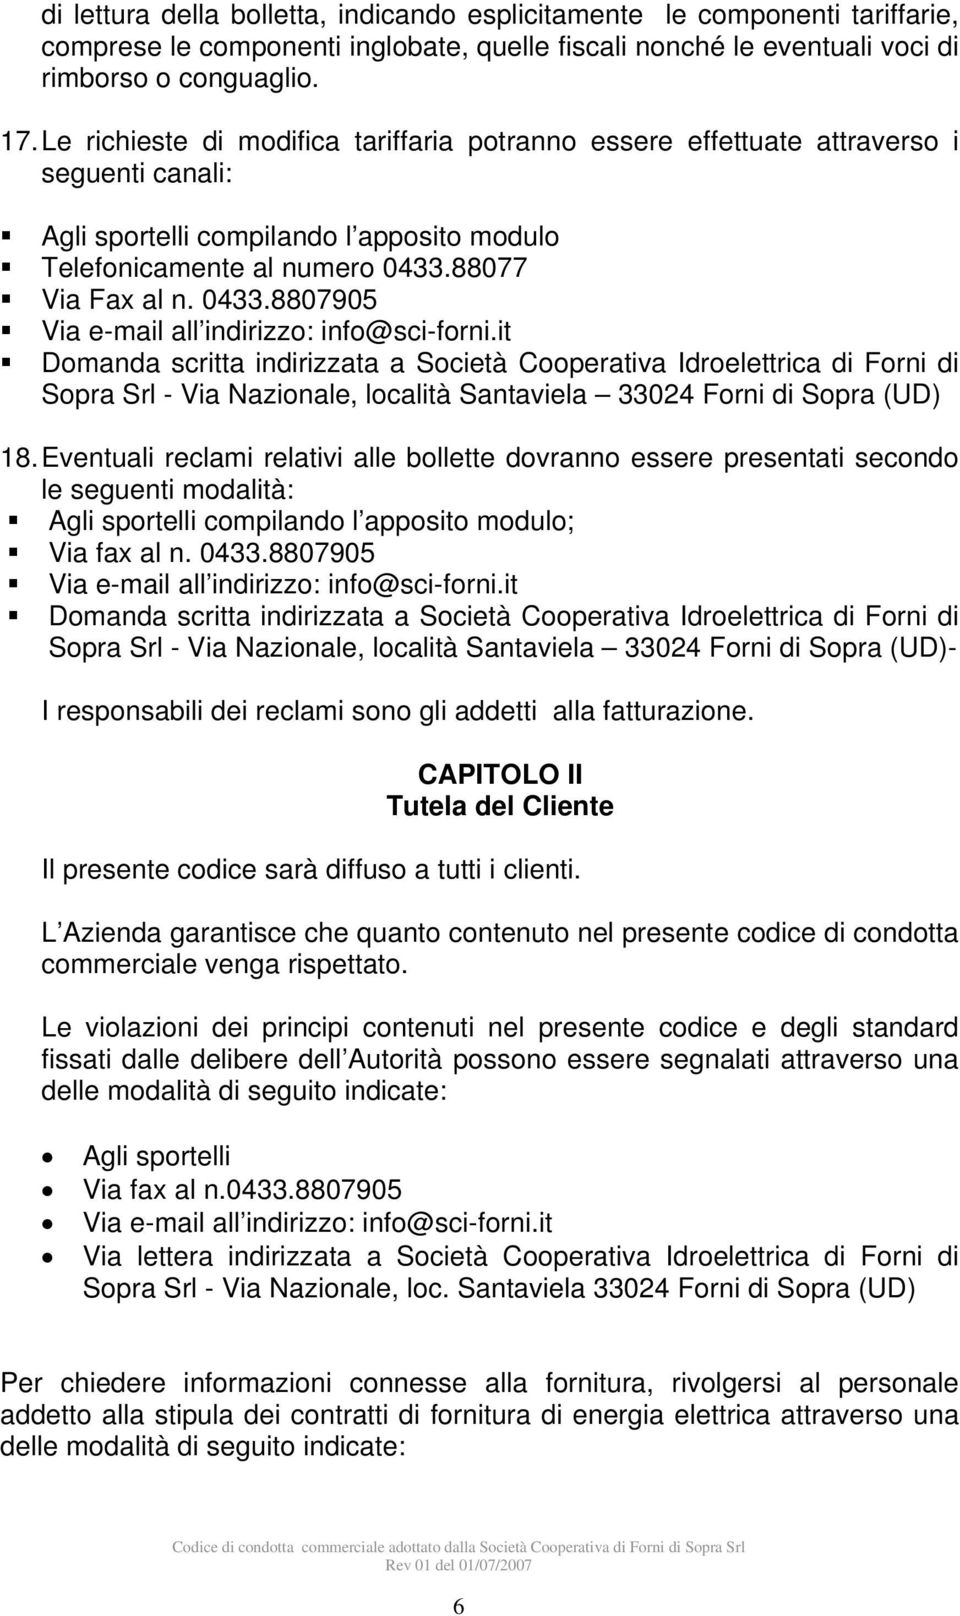 88077 Via Fax al n. 0433.8807905 Domanda scritta indirizzata a Società Cooperativa Idroelettrica di Forni di Sopra Srl - Via Nazionale, località Santaviela 33024 Forni di Sopra (UD) 18.